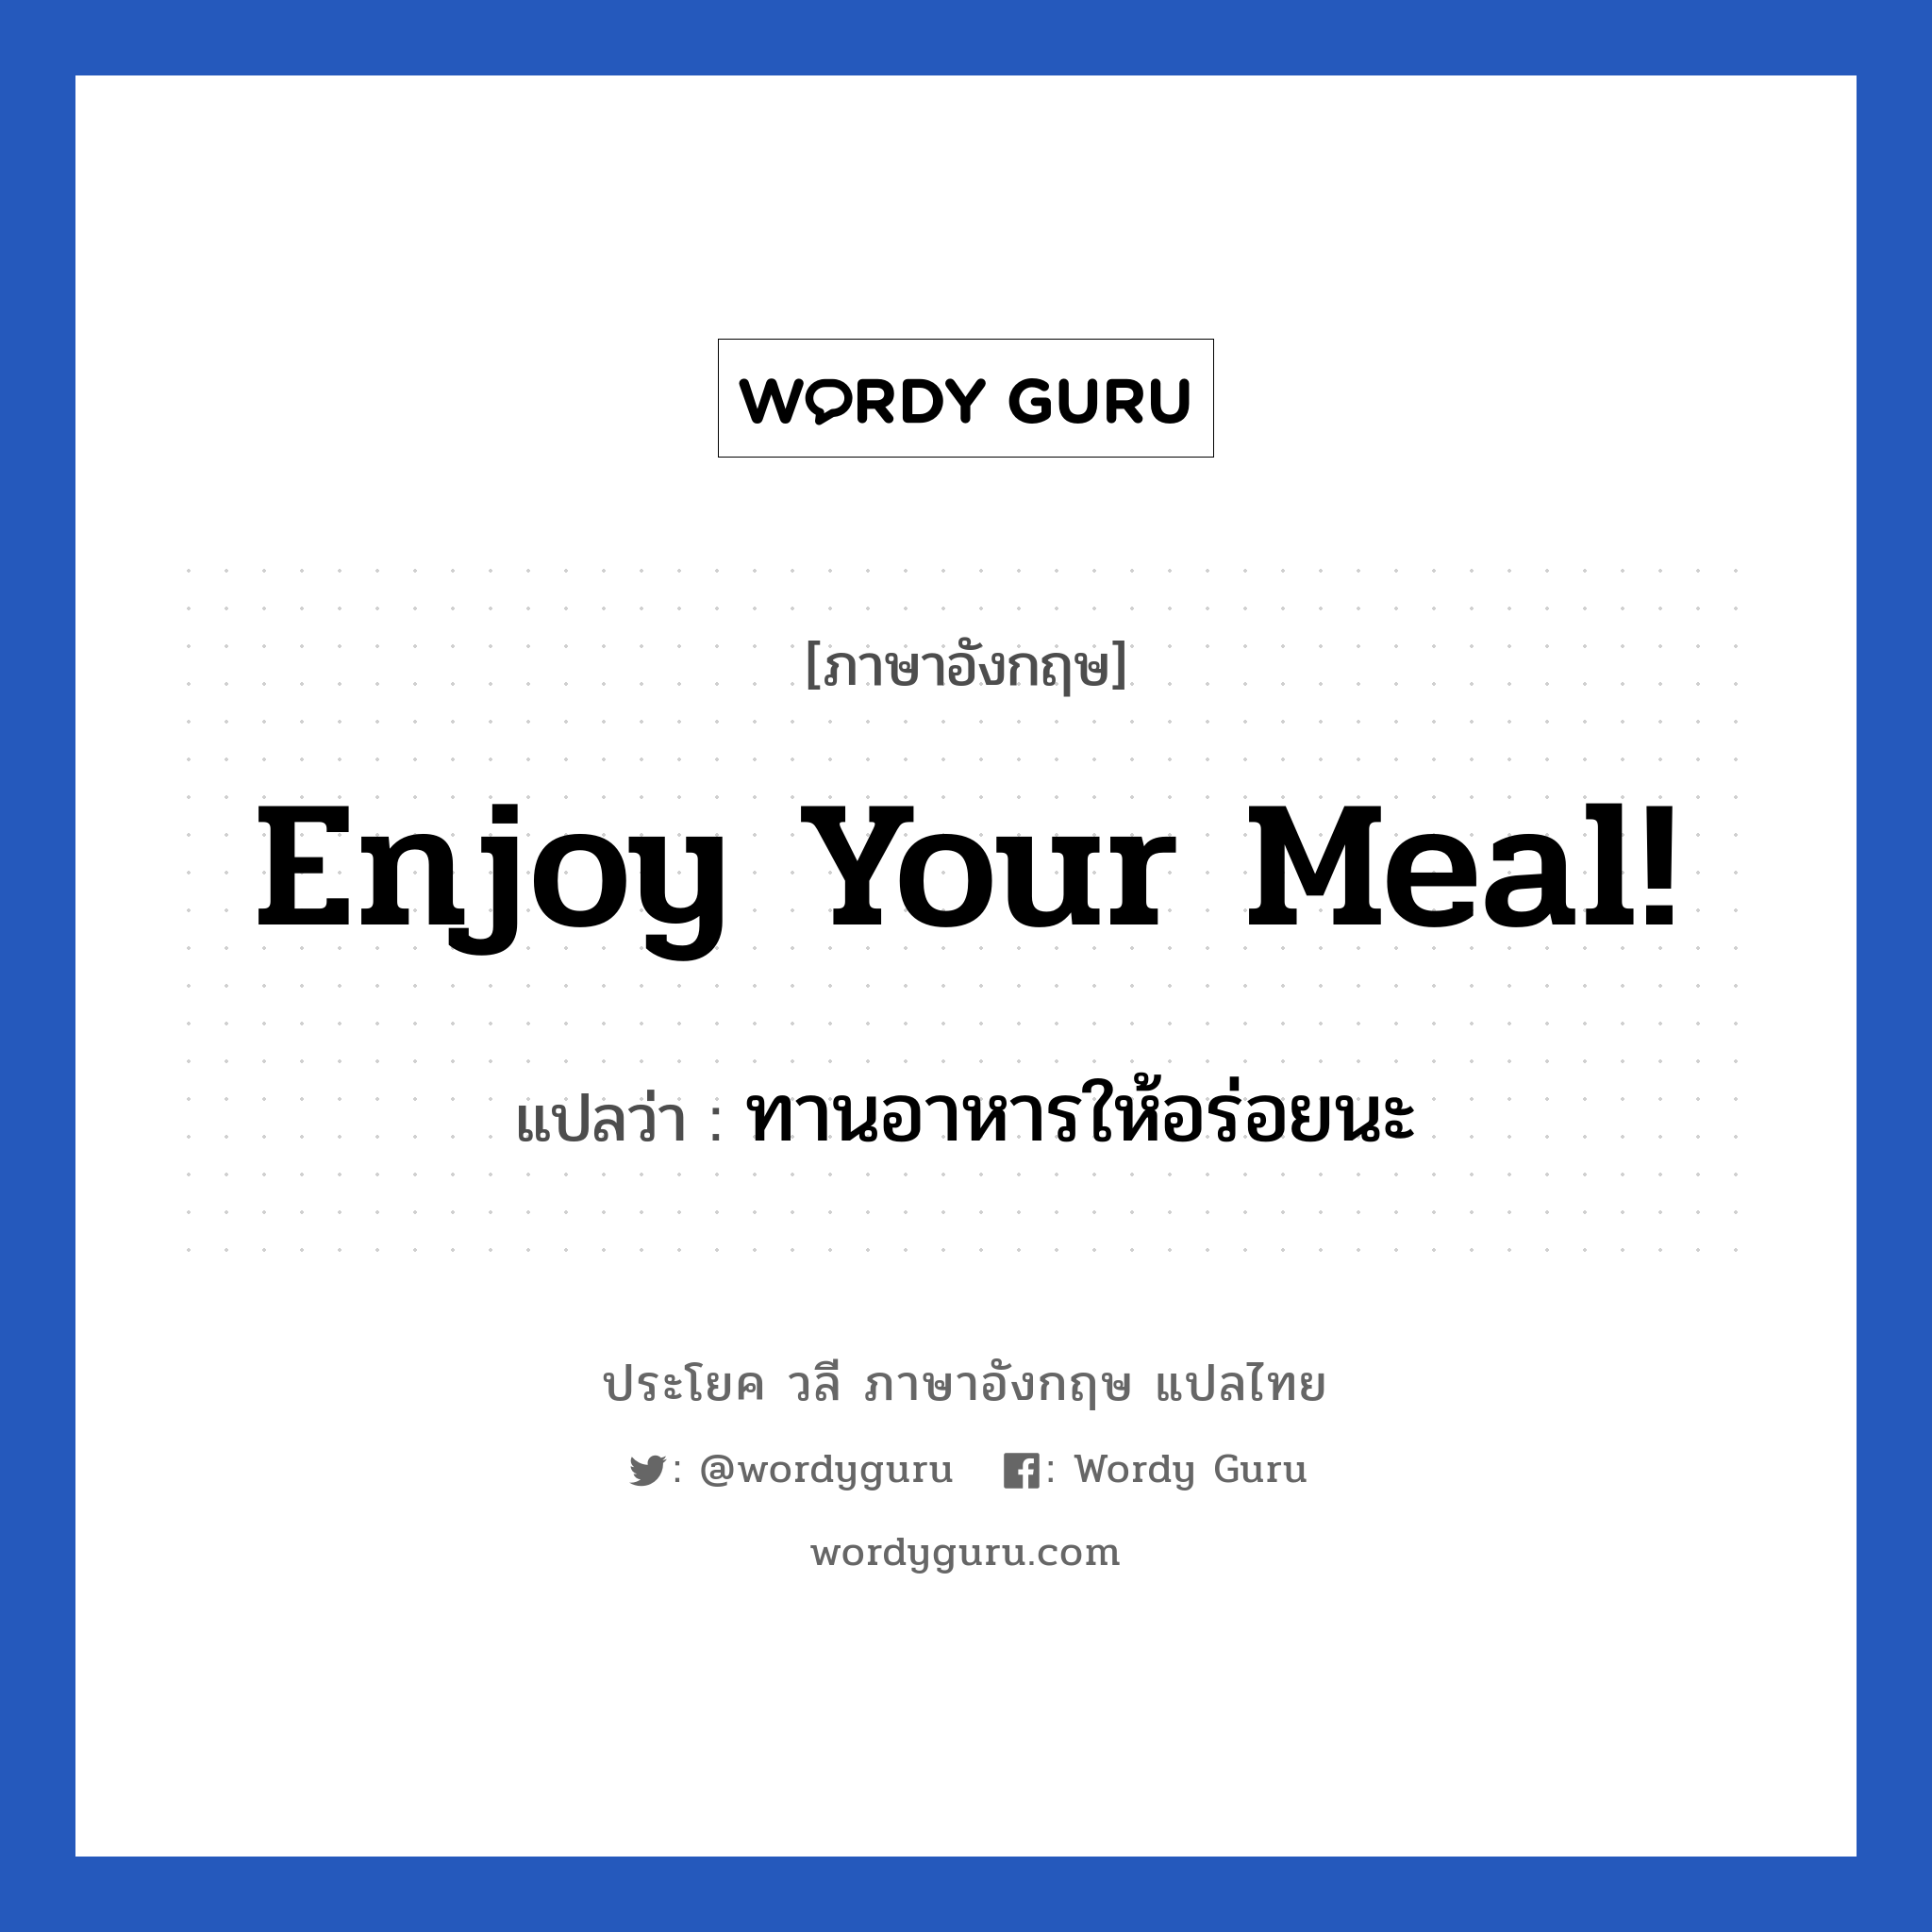 ทานอาหารให้อร่อยนะ ภาษาอังกฤษ?, วลีภาษาอังกฤษ ทานอาหารให้อร่อยนะ แปลว่า Enjoy your meal!